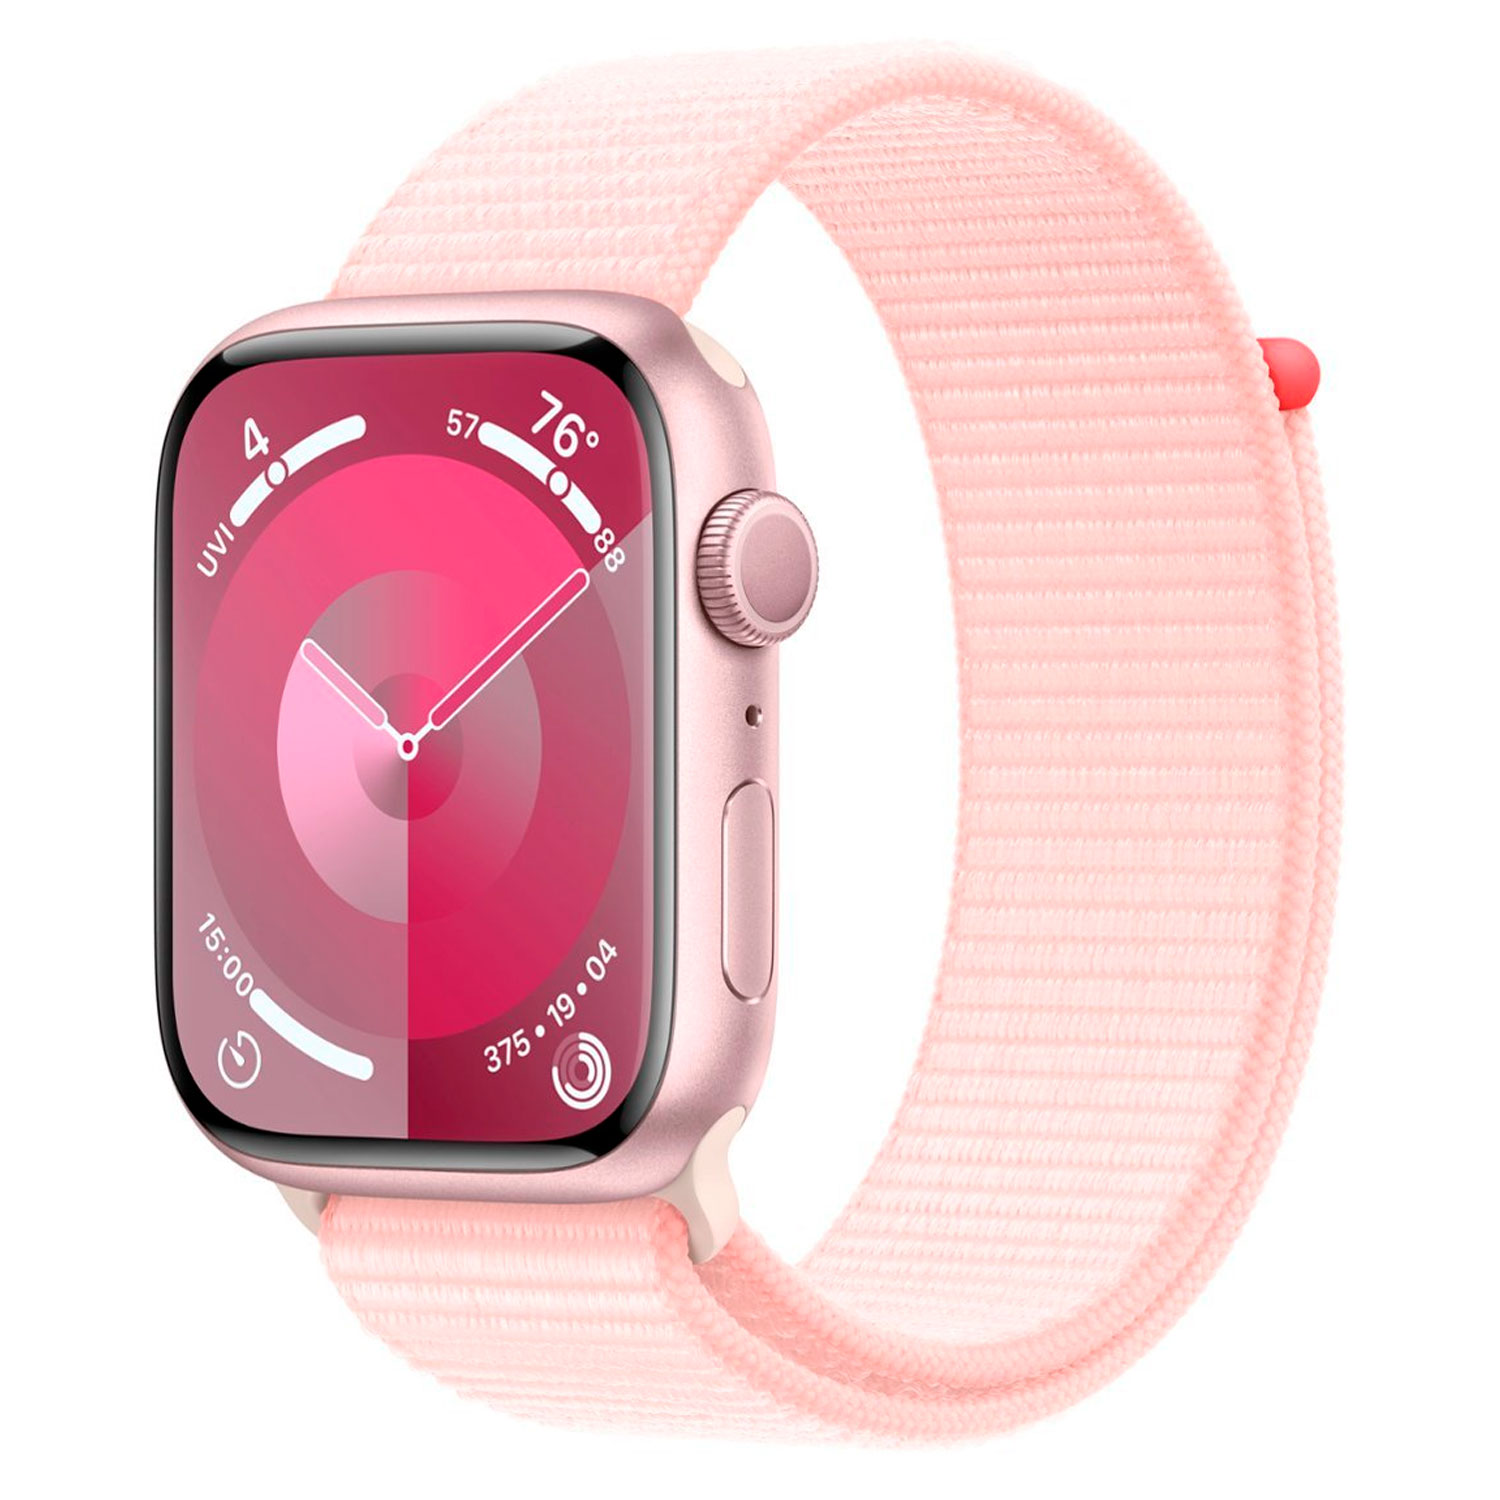 Apple Watch Series 9 MR9J3LL/A Caixa Alumínio 45mm Rosa - Loop Esportiva Rosa (Caixa Danificada)	